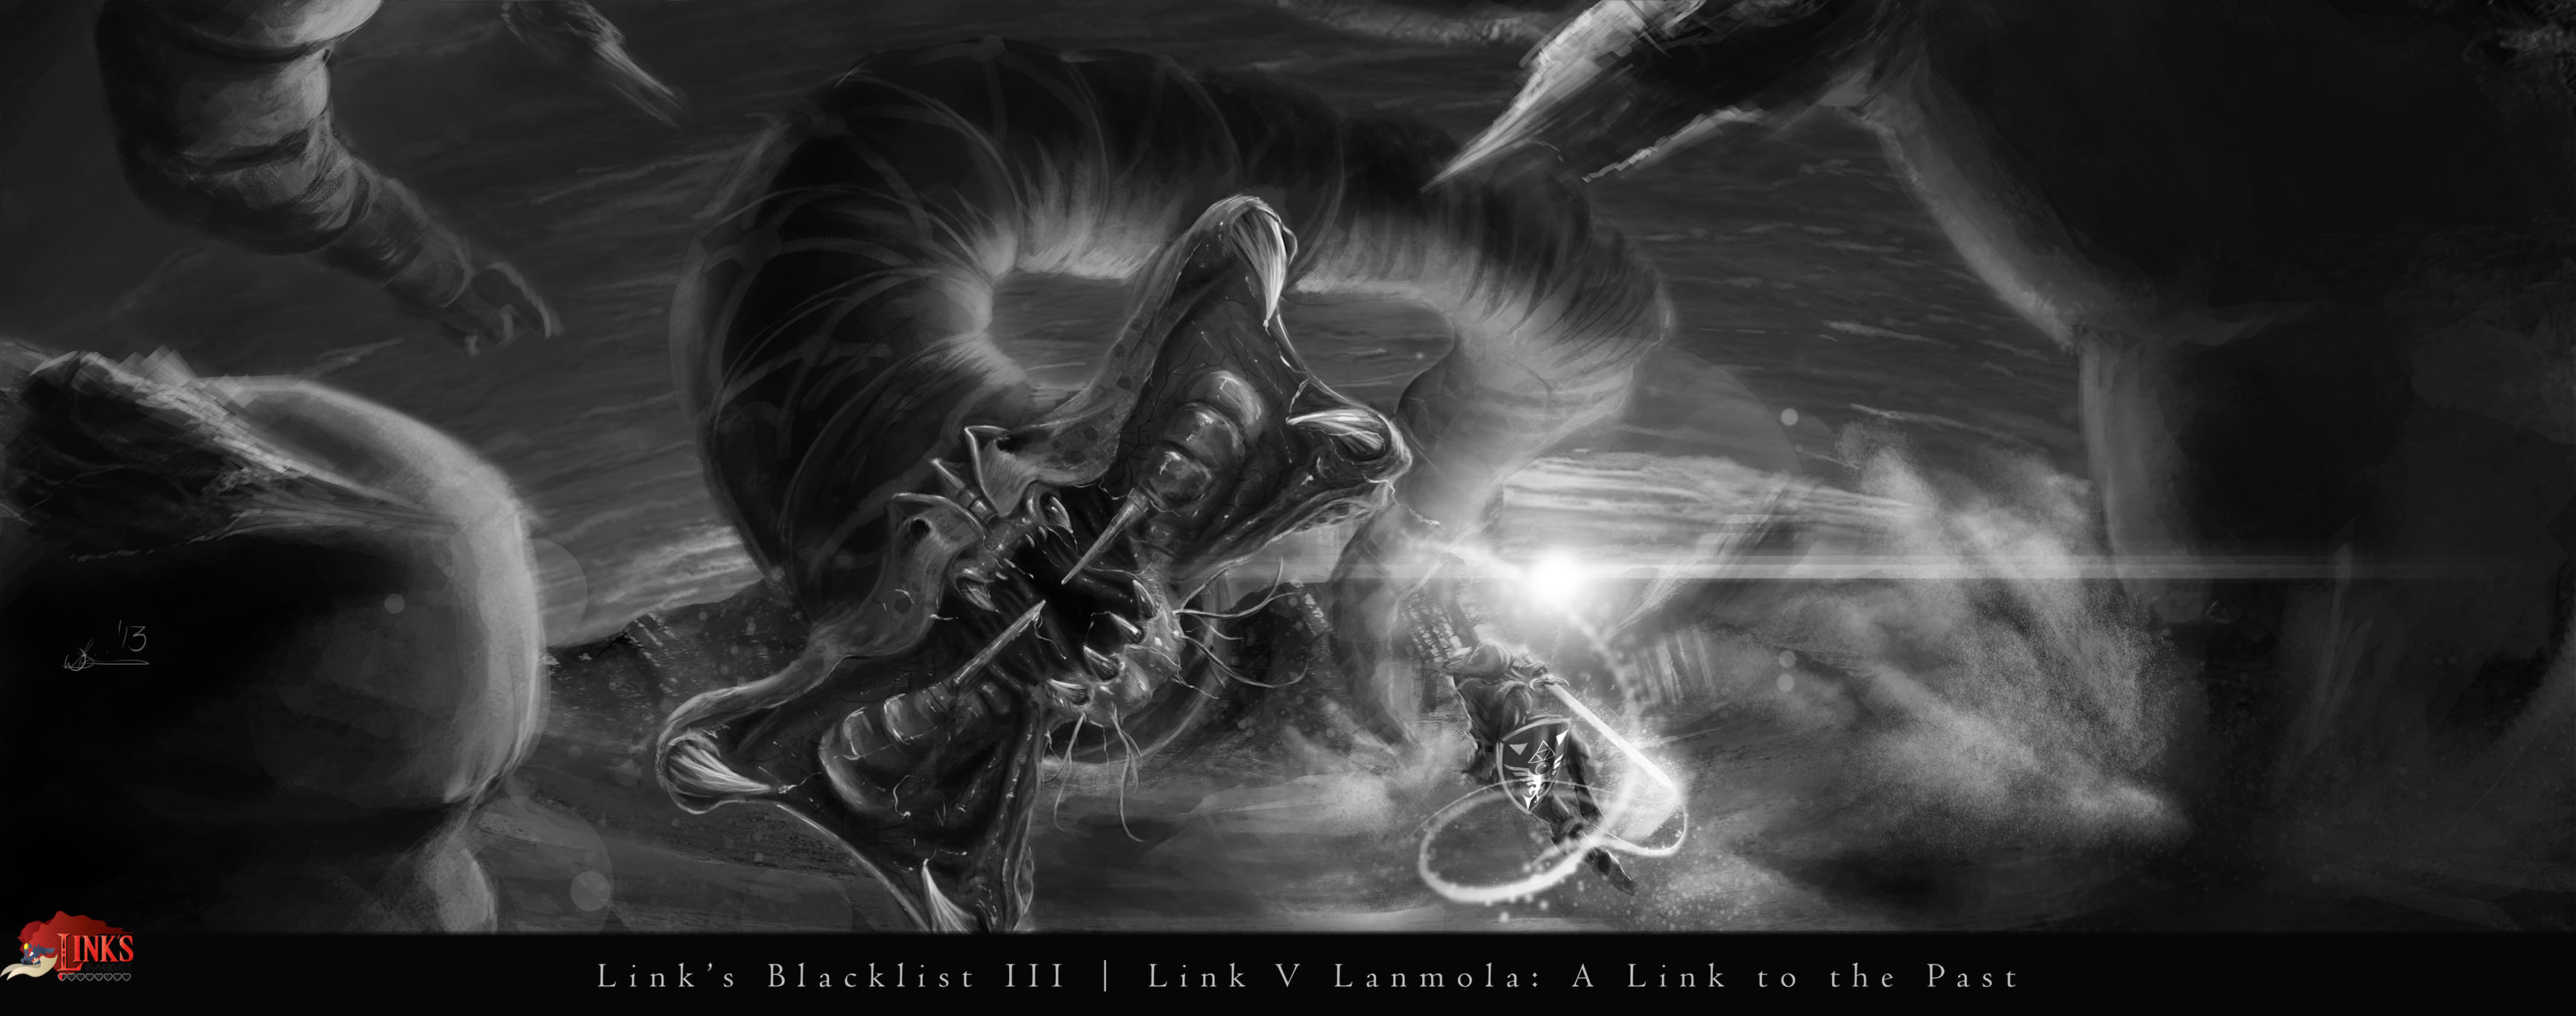 Lanmola Zelda ALTTP for Link's Blacklist